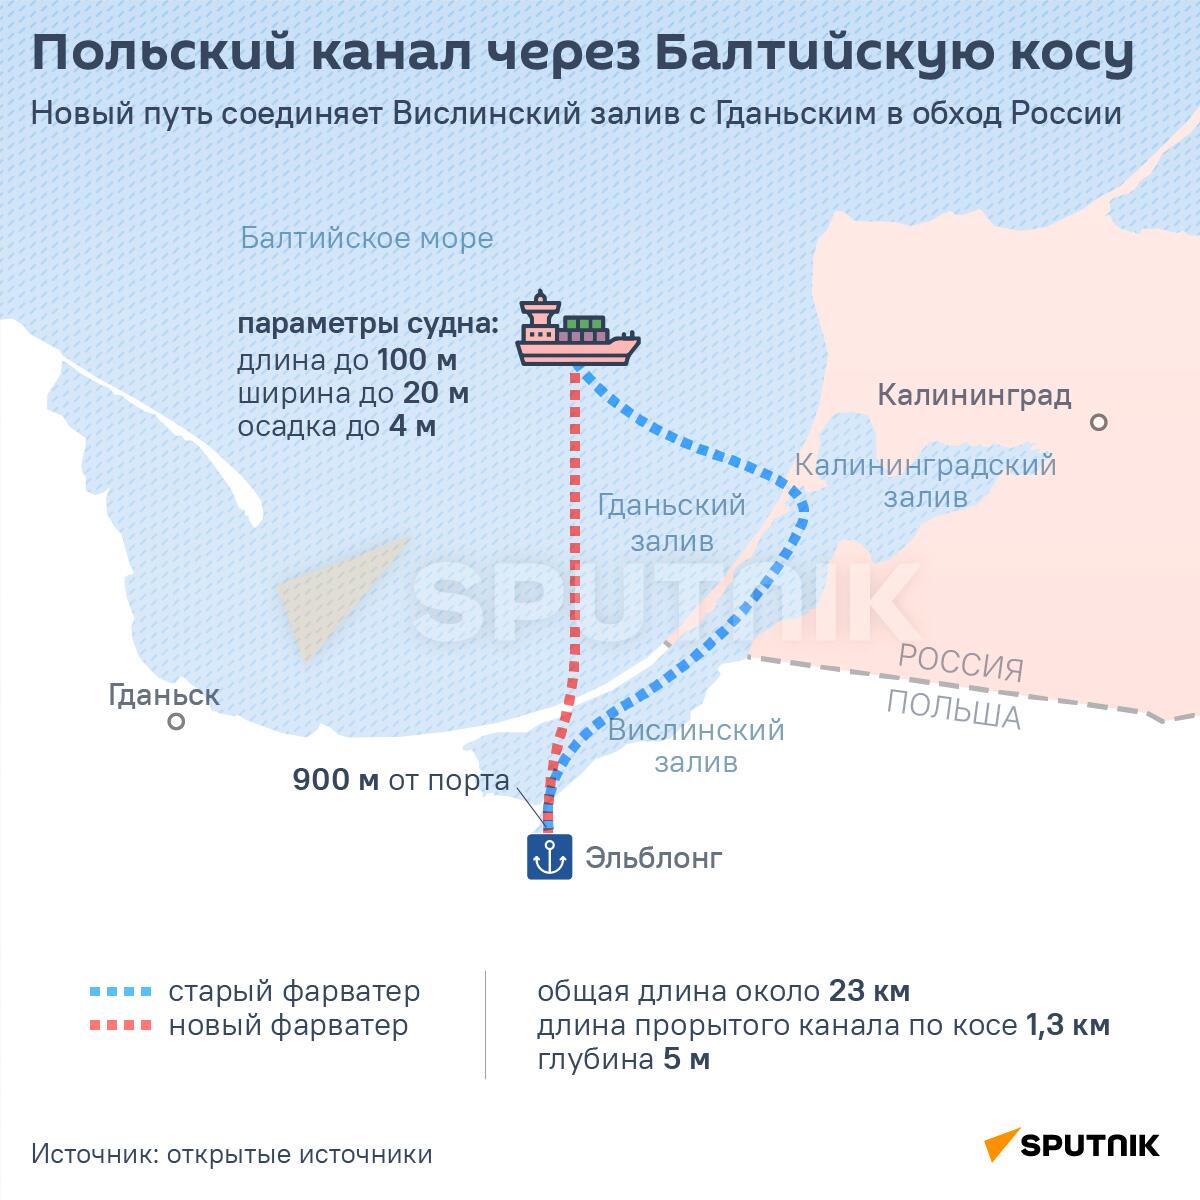 Инфографика: Польский канал через балтийское море - Sputnik Азербайджан